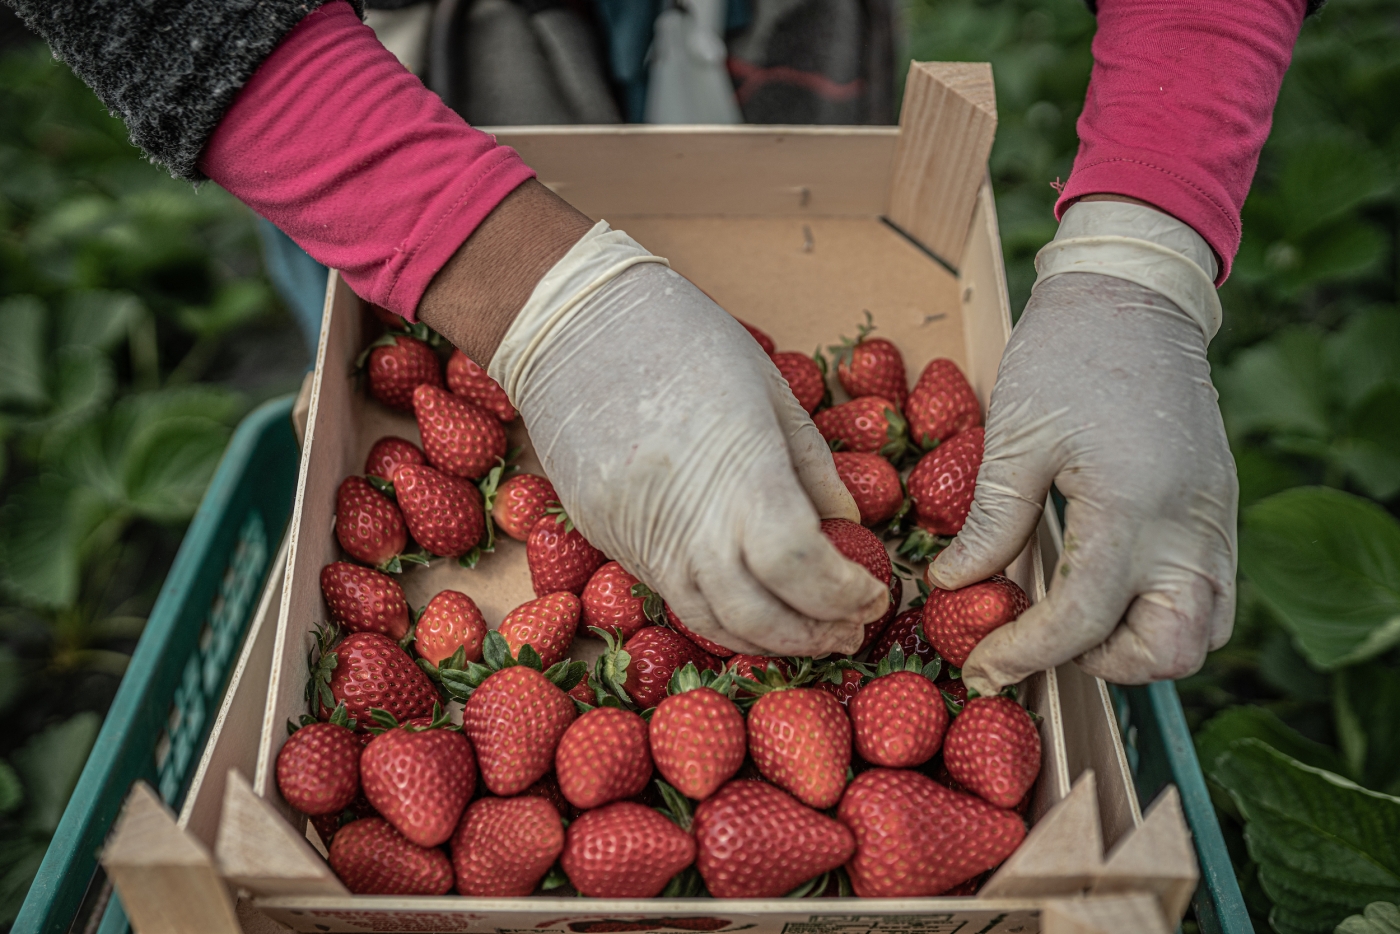 Strawberry picker in Spain